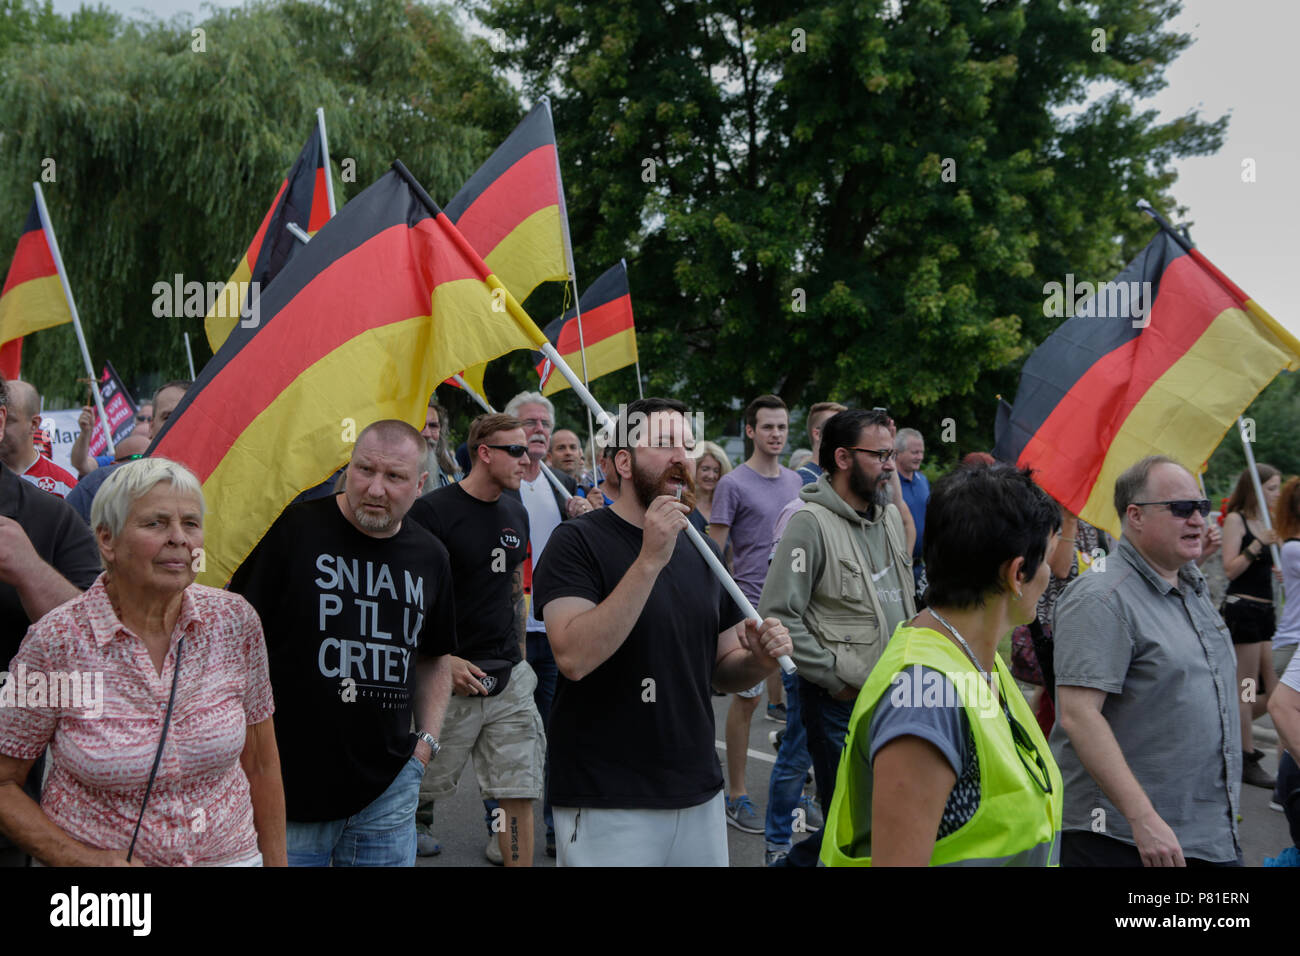 Kandel, Deutschland. 07 Juli, 2018. Die rechten Demonstranten März durch Kandel mit deutschen Fahnen. Rund 200 Menschen von Rechten Organisationen protestierten für das 10. mal in der Stadt Kandel in der Pfalz gegen Flüchtlinge, Ausländer und der deutschen Regierung. Sie forderten mehr Sicherheit von Deutschen und Frauen aus der angeblichen Zunahme der Gewalt durch Flüchtlinge. An die Stelle der Protest wurde gewählt, weil der 2017 Kandel erstechen Angriff, bei dem ein 15 Jahre altes Mädchen von einem Asylbewerber getötet wurde. Sie wurden von rund 200 anti-faschistischen counter-Demonstranten aus unterschiedlichen politischen Teil belästigt Stockfoto